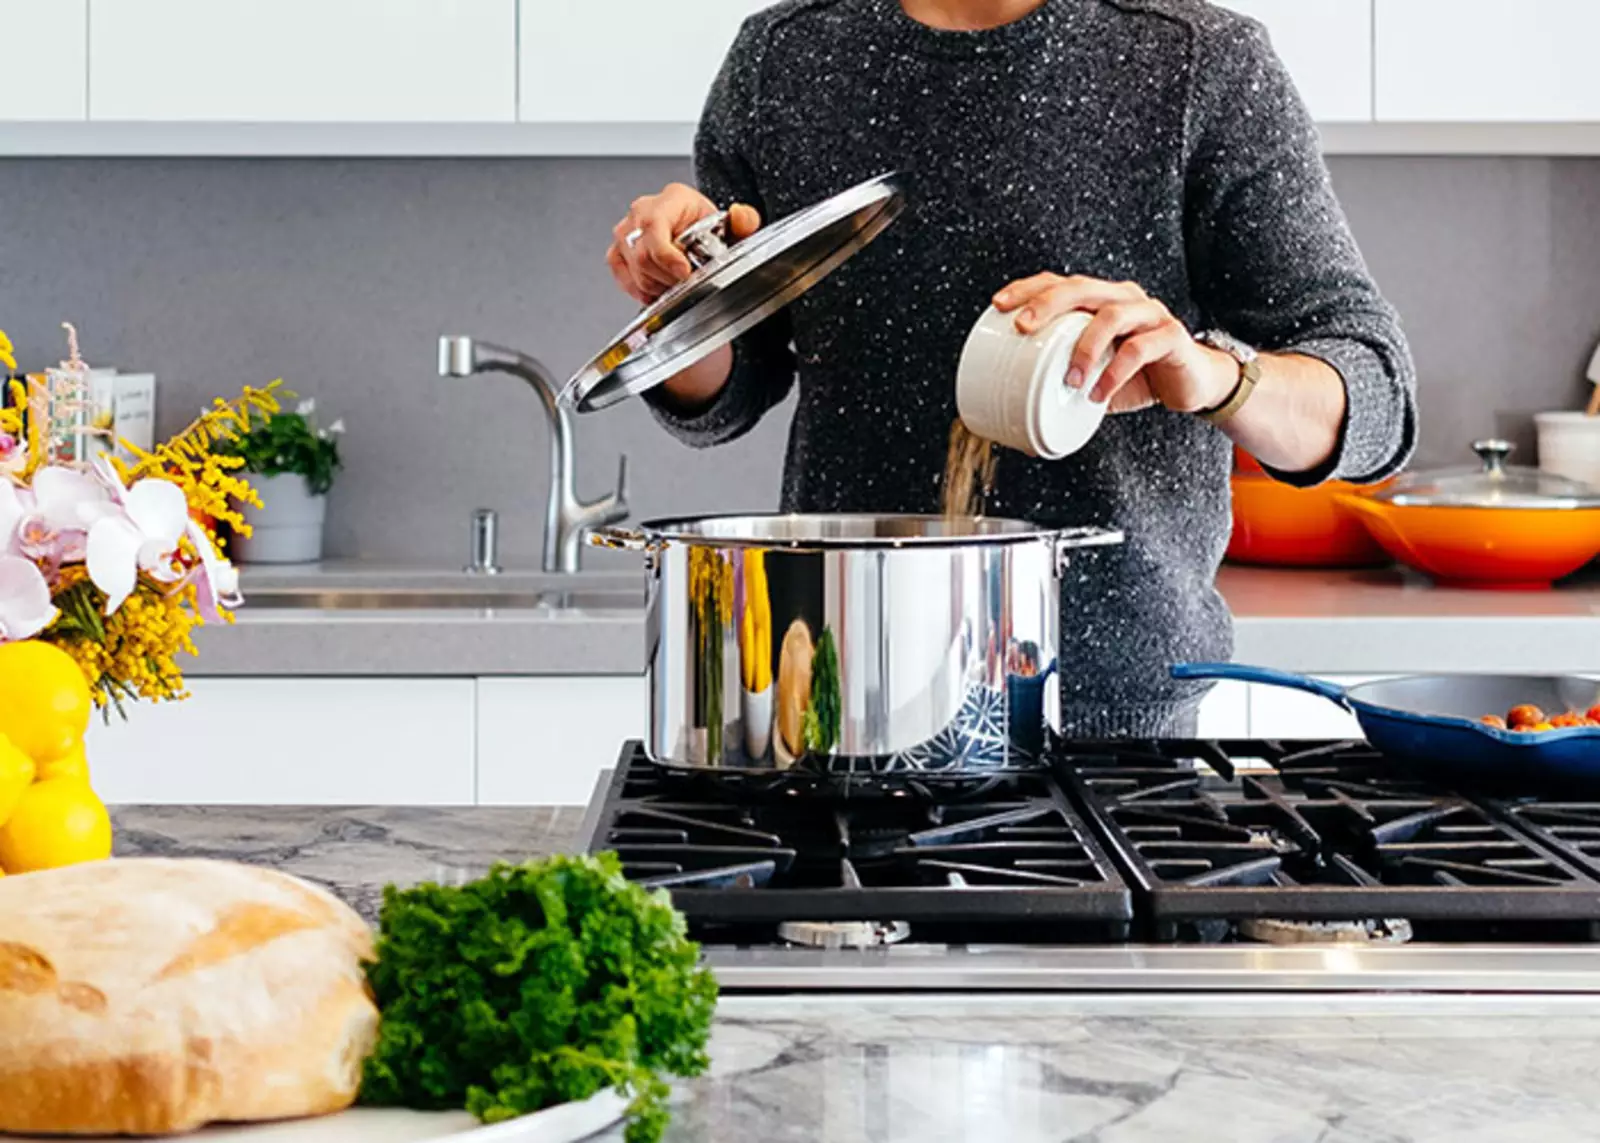 Правильно используйте кухонное оборудование. Нарезайте мясо ножом для мяса, отмеряйте ингредиенты мерным стаканом и мерными ложками, взбивайте яйца и другие продукты вечником, а не вилкой, и так далее.